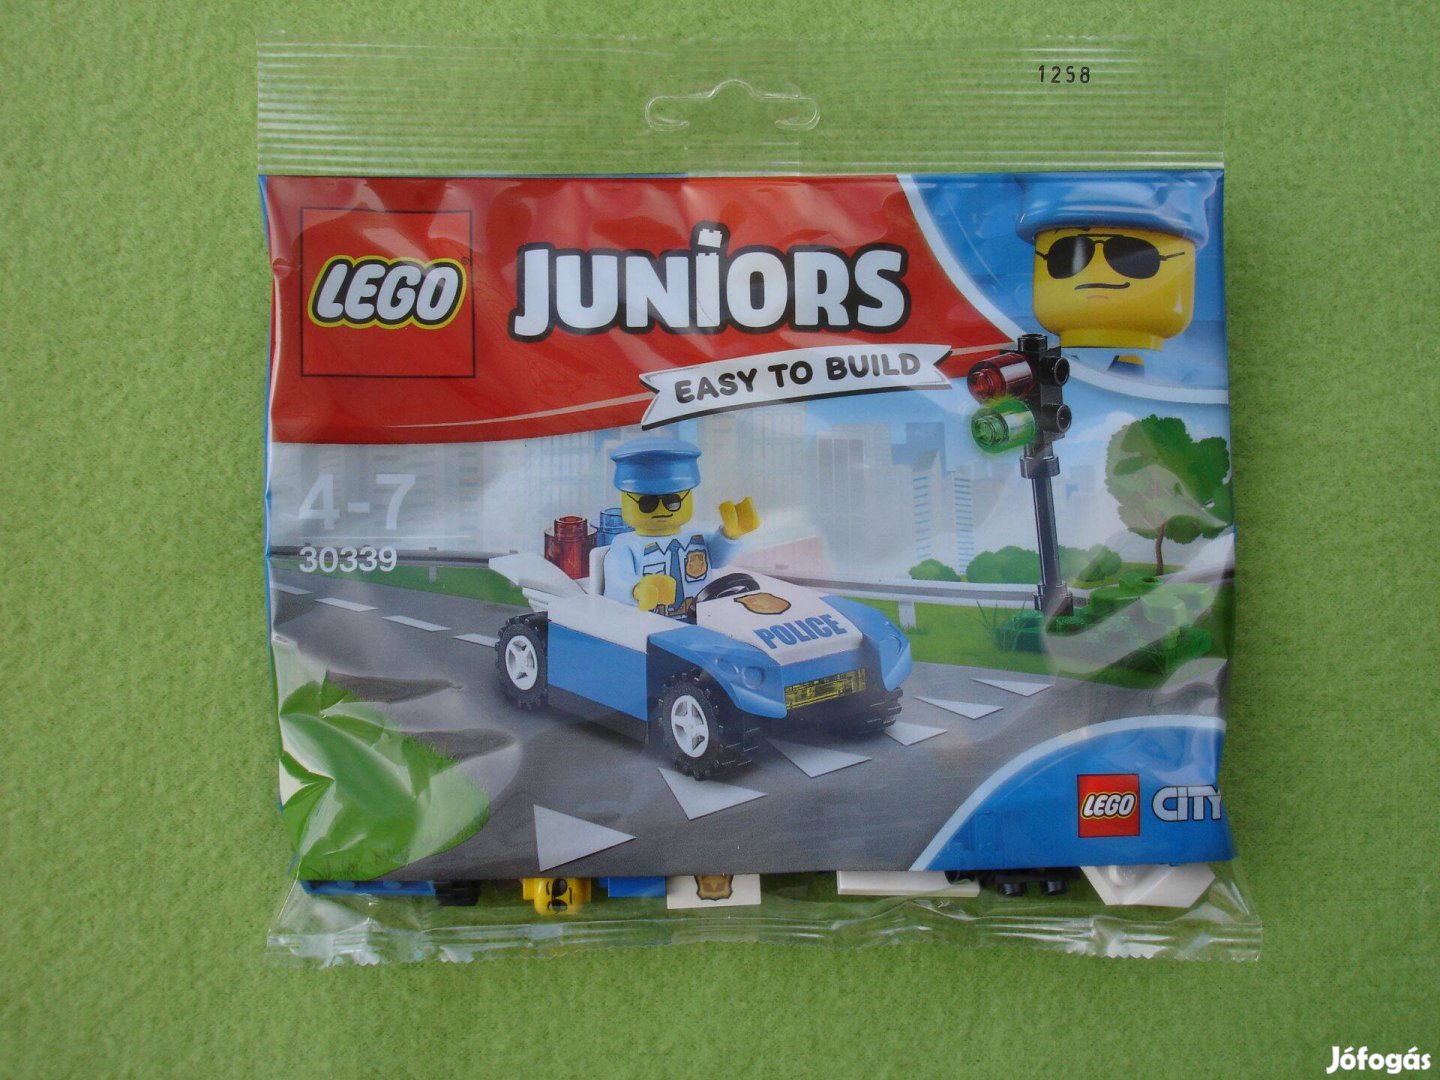 LEGO Juniors 30339 City - Közlekedési járőr Bontatlan